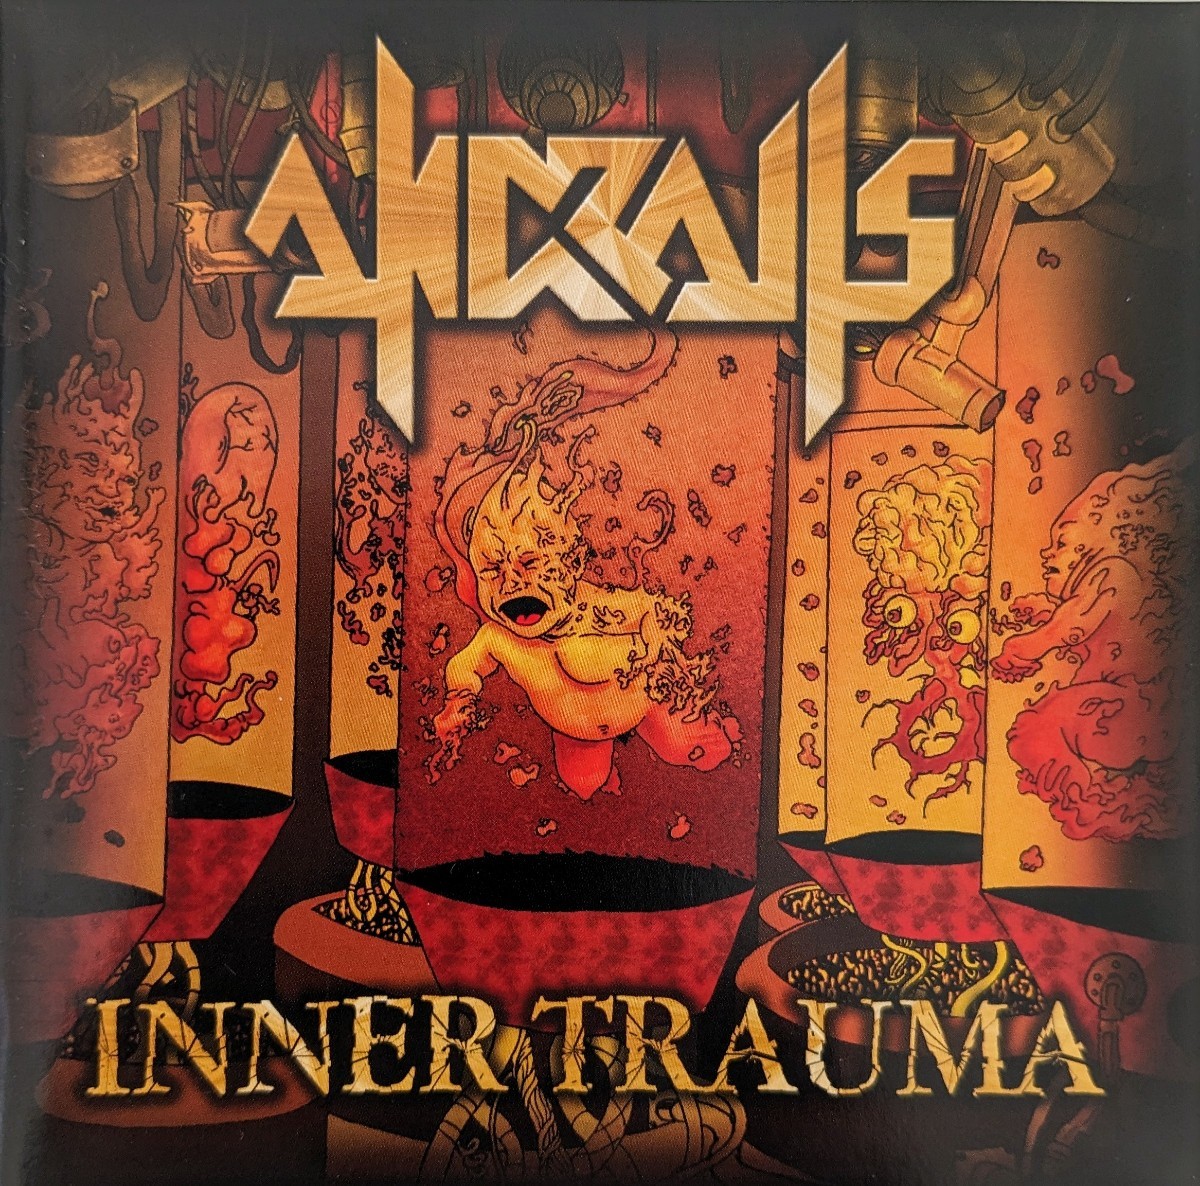 ANDRALLS Brazil Thrash Heavy Metal スラッシュメタル ヘヴィメタル 輸入盤CD 3rdの画像1